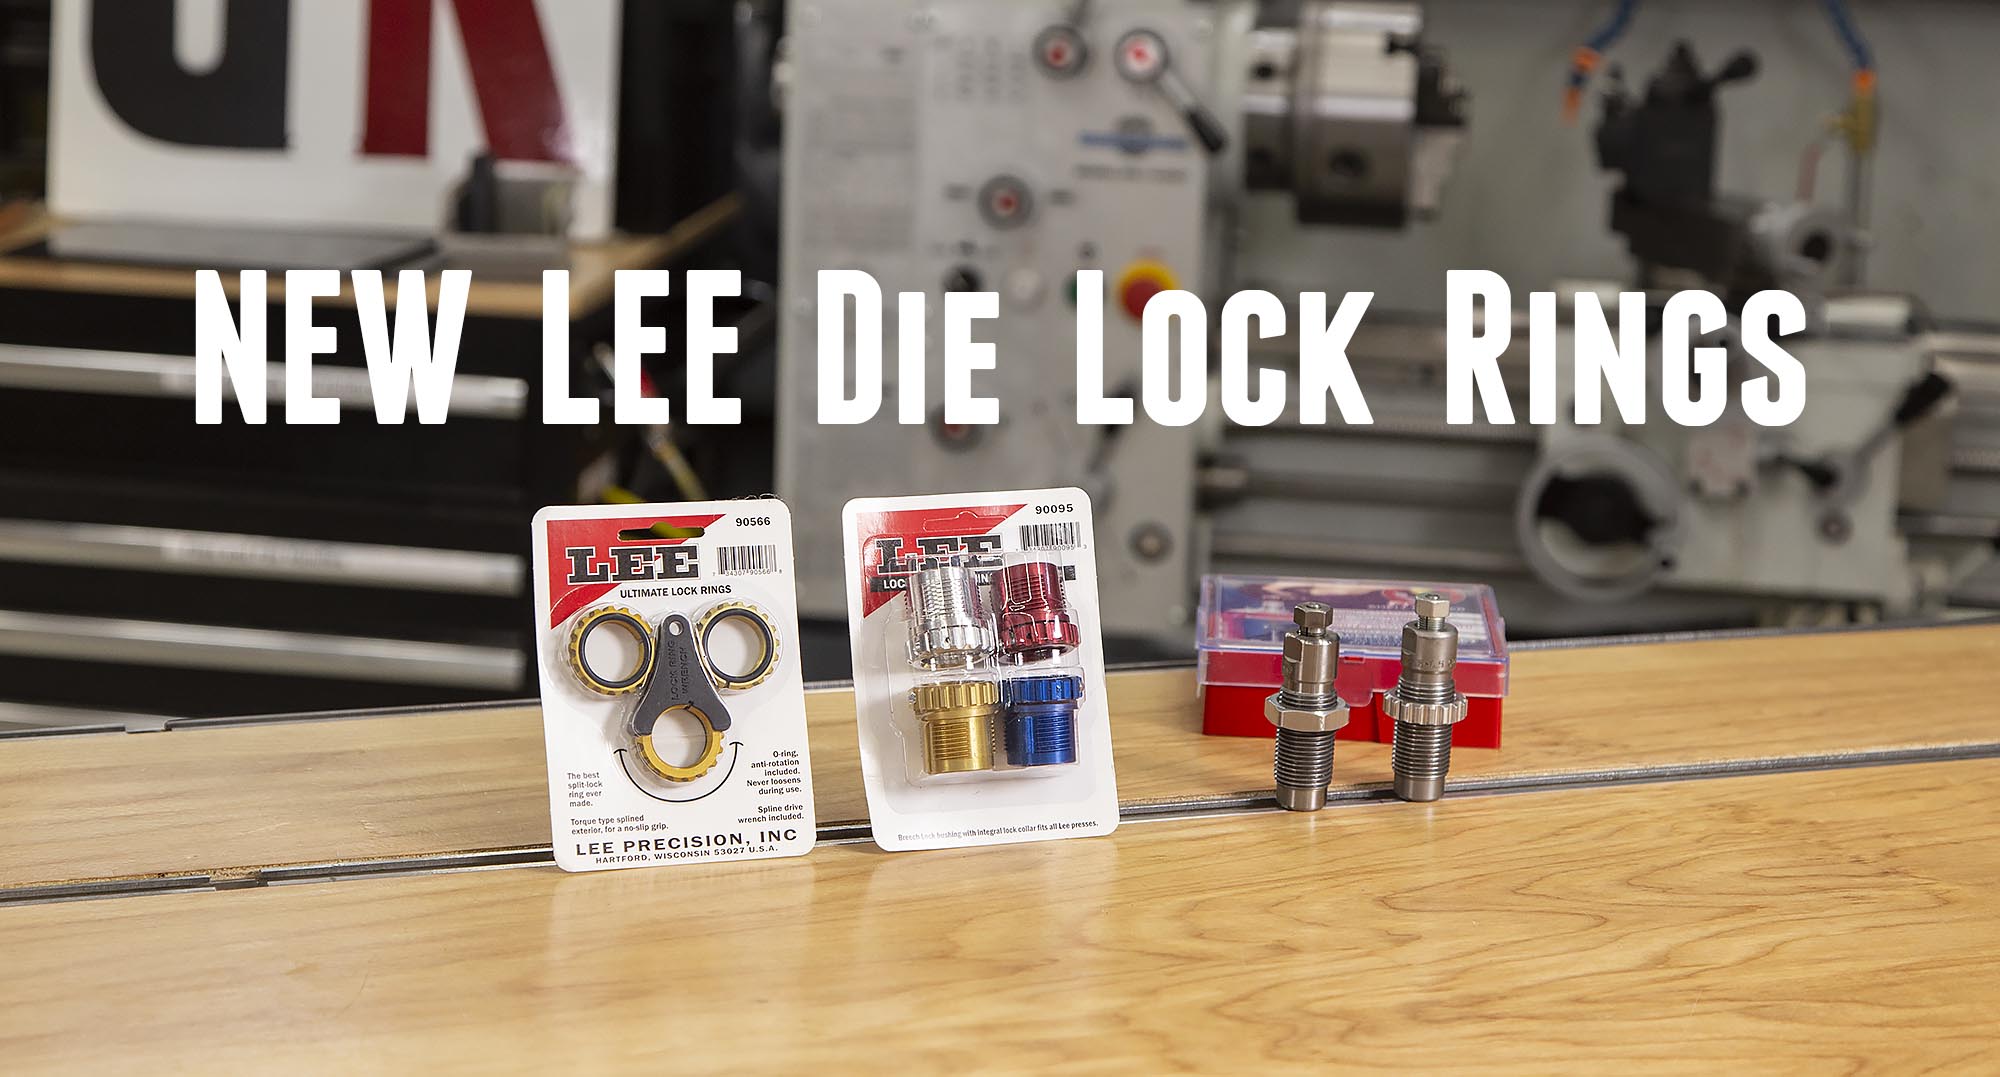 Pack Of 3 Aluminium Lee Precision Self Lock Rings For Reloading Dies 90534 #78 